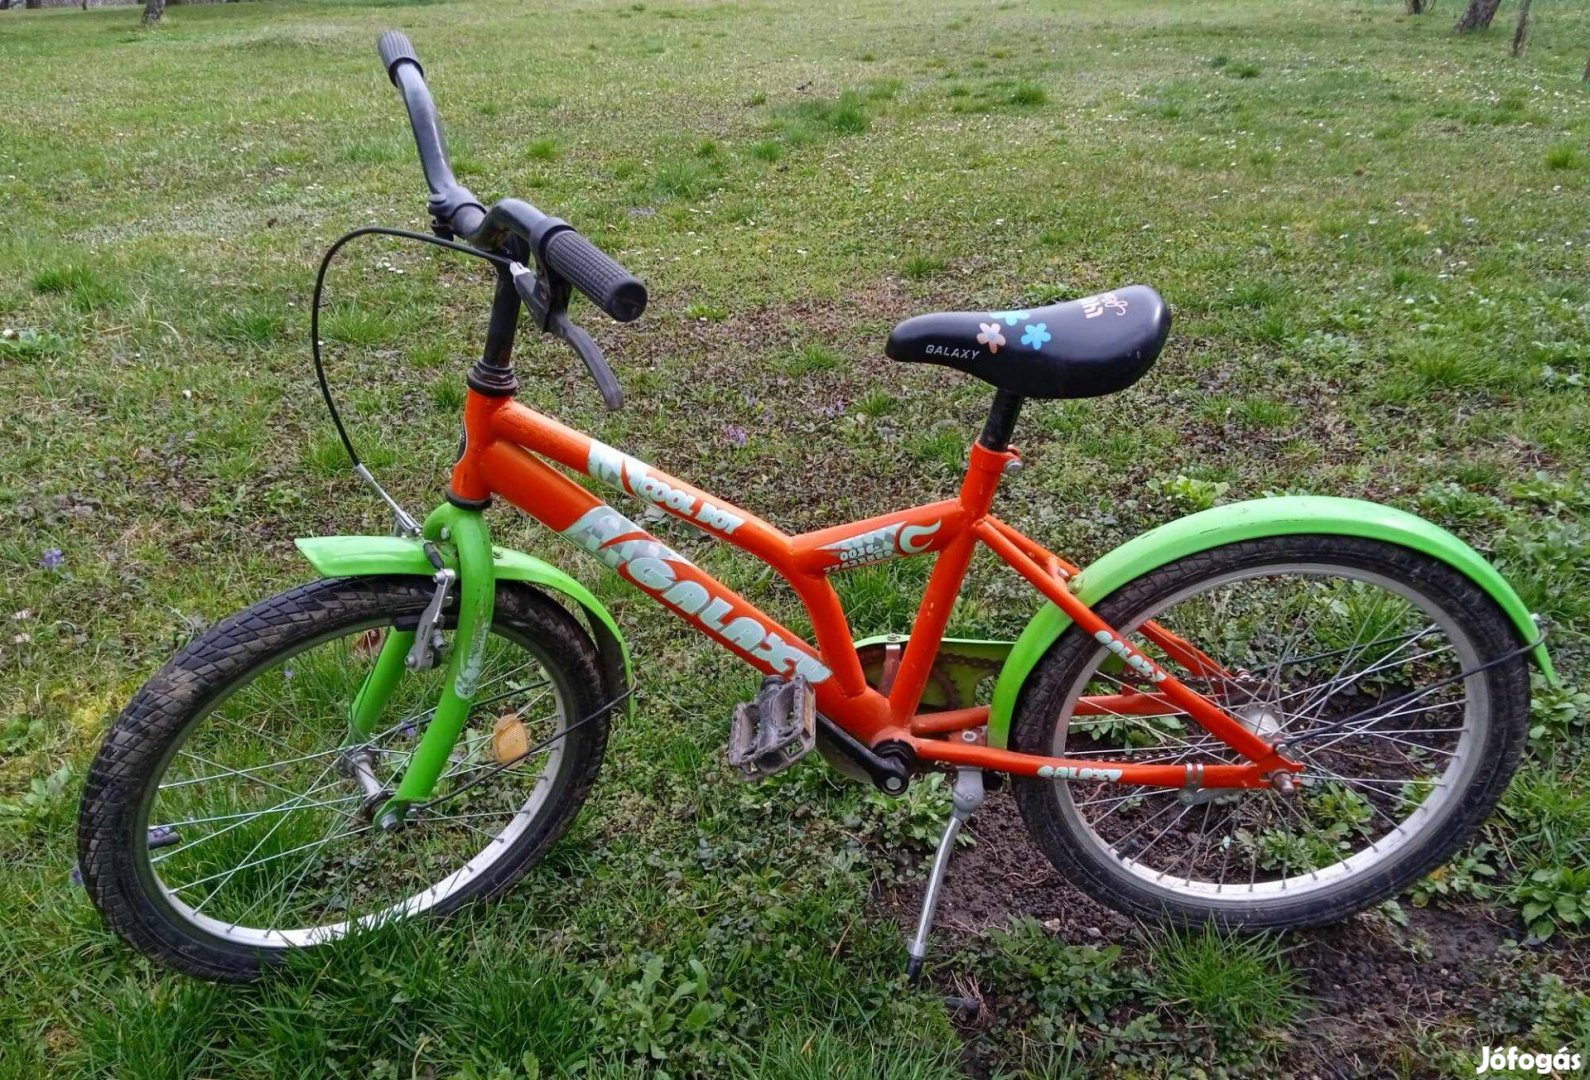 Eladó használt gyermek bicikli 20"